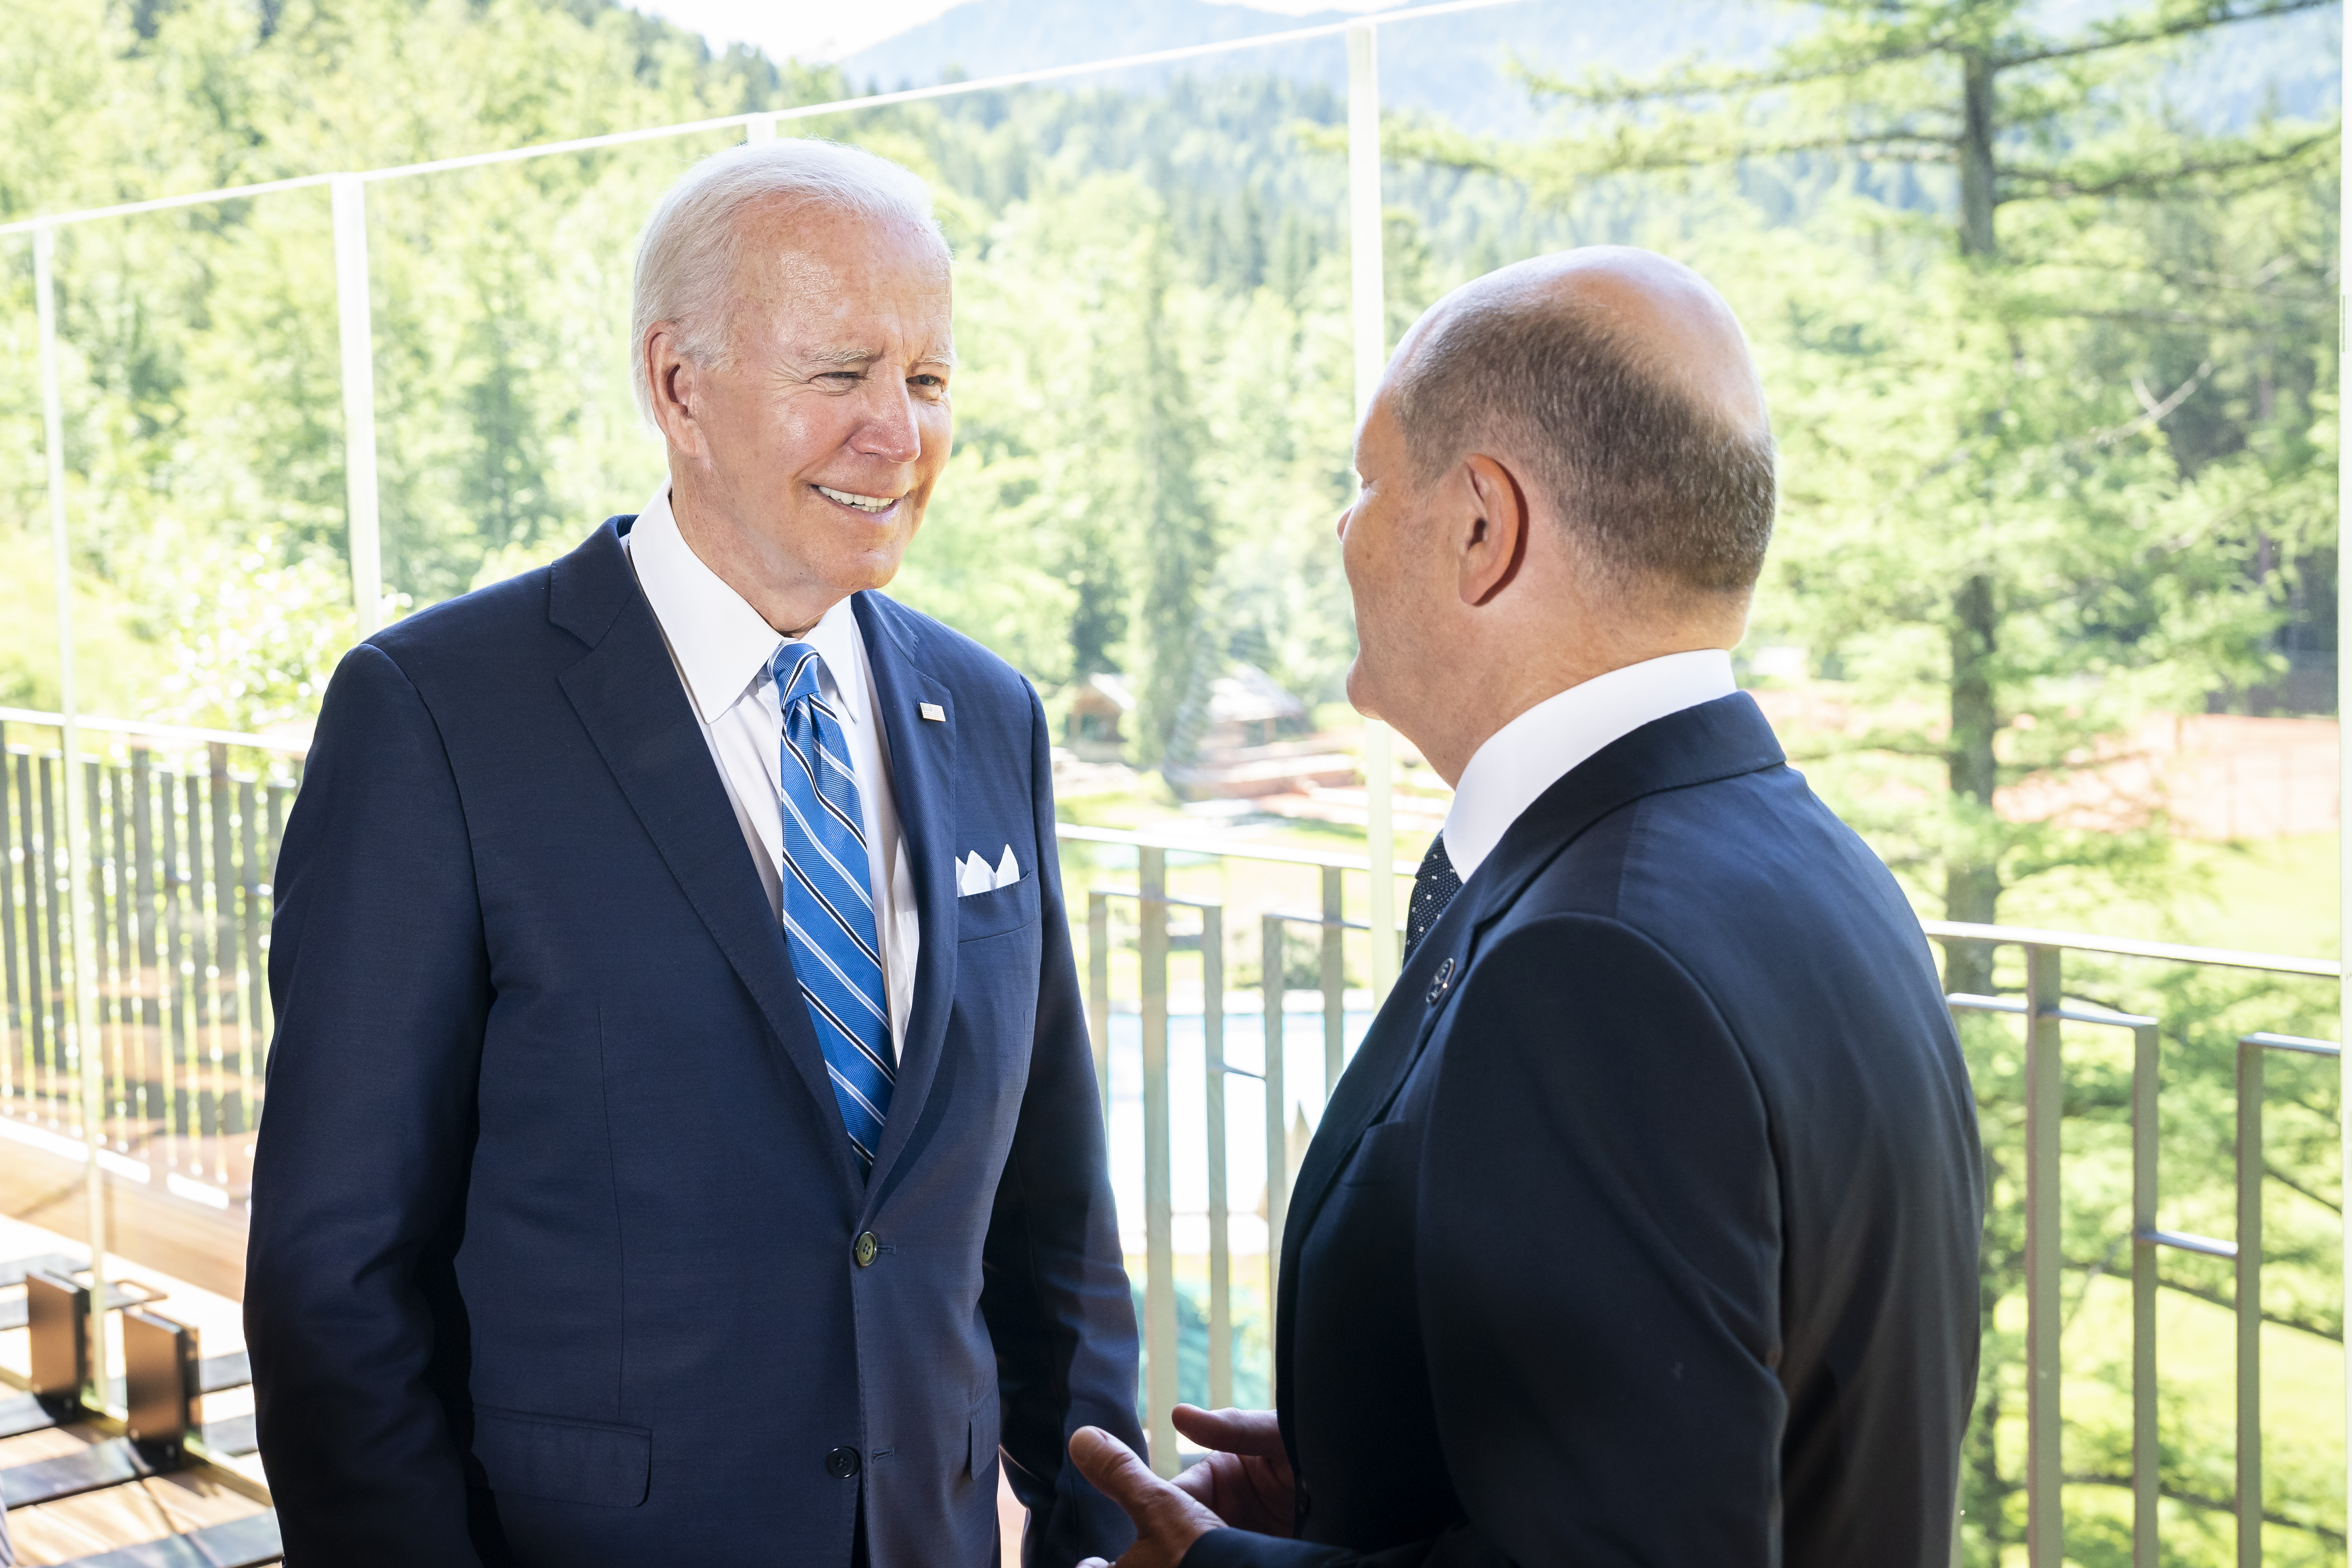 Bilaterales Gespräch zwischen Bundeskanzler Olaf Scholz und dem US-amerikanischen Präsidenten Joe Biden auf Schloss Elmau.